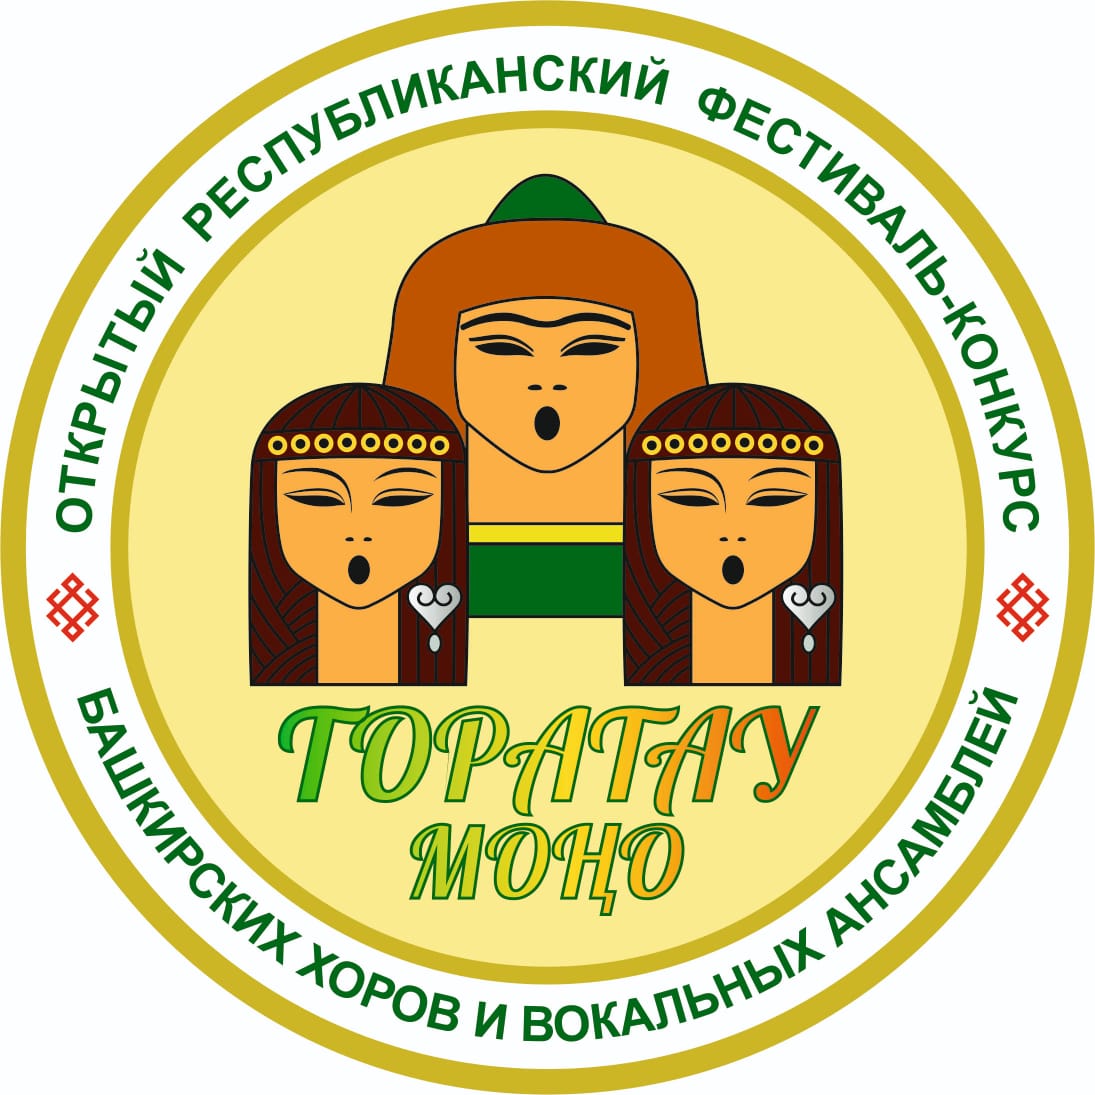 Открыт прием заявок на фестиваль-конкурс башкирских хоров и  вокальных ансамблей «Торатау моңо» («Мелодии Торатау»)